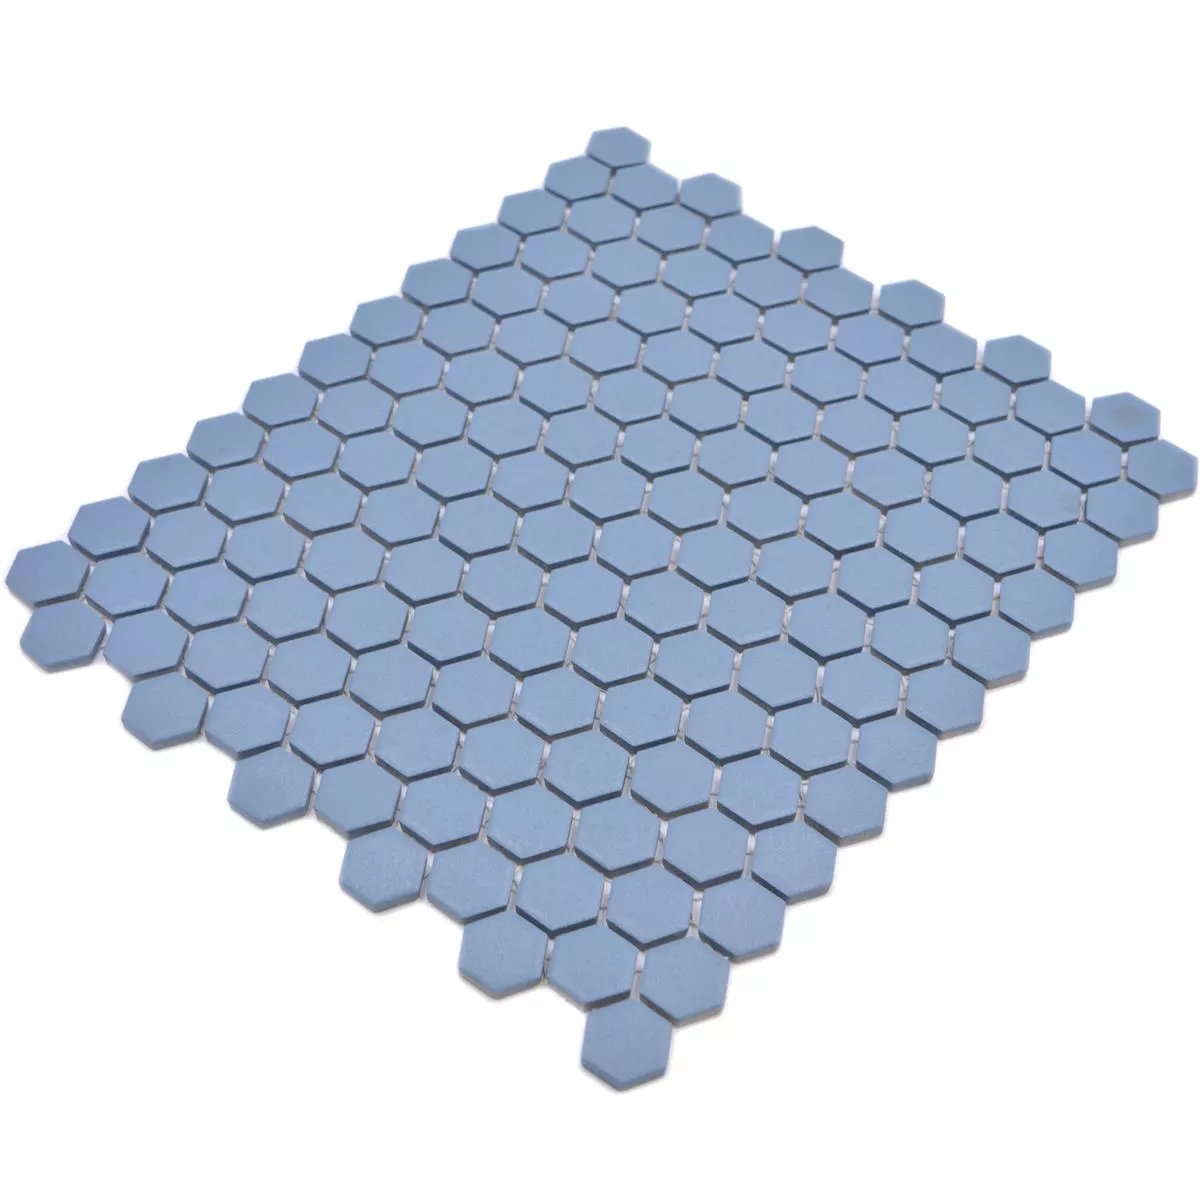 Mozaika Ceramiczna Bismarck R10B Sześciokąt Niebieski H23